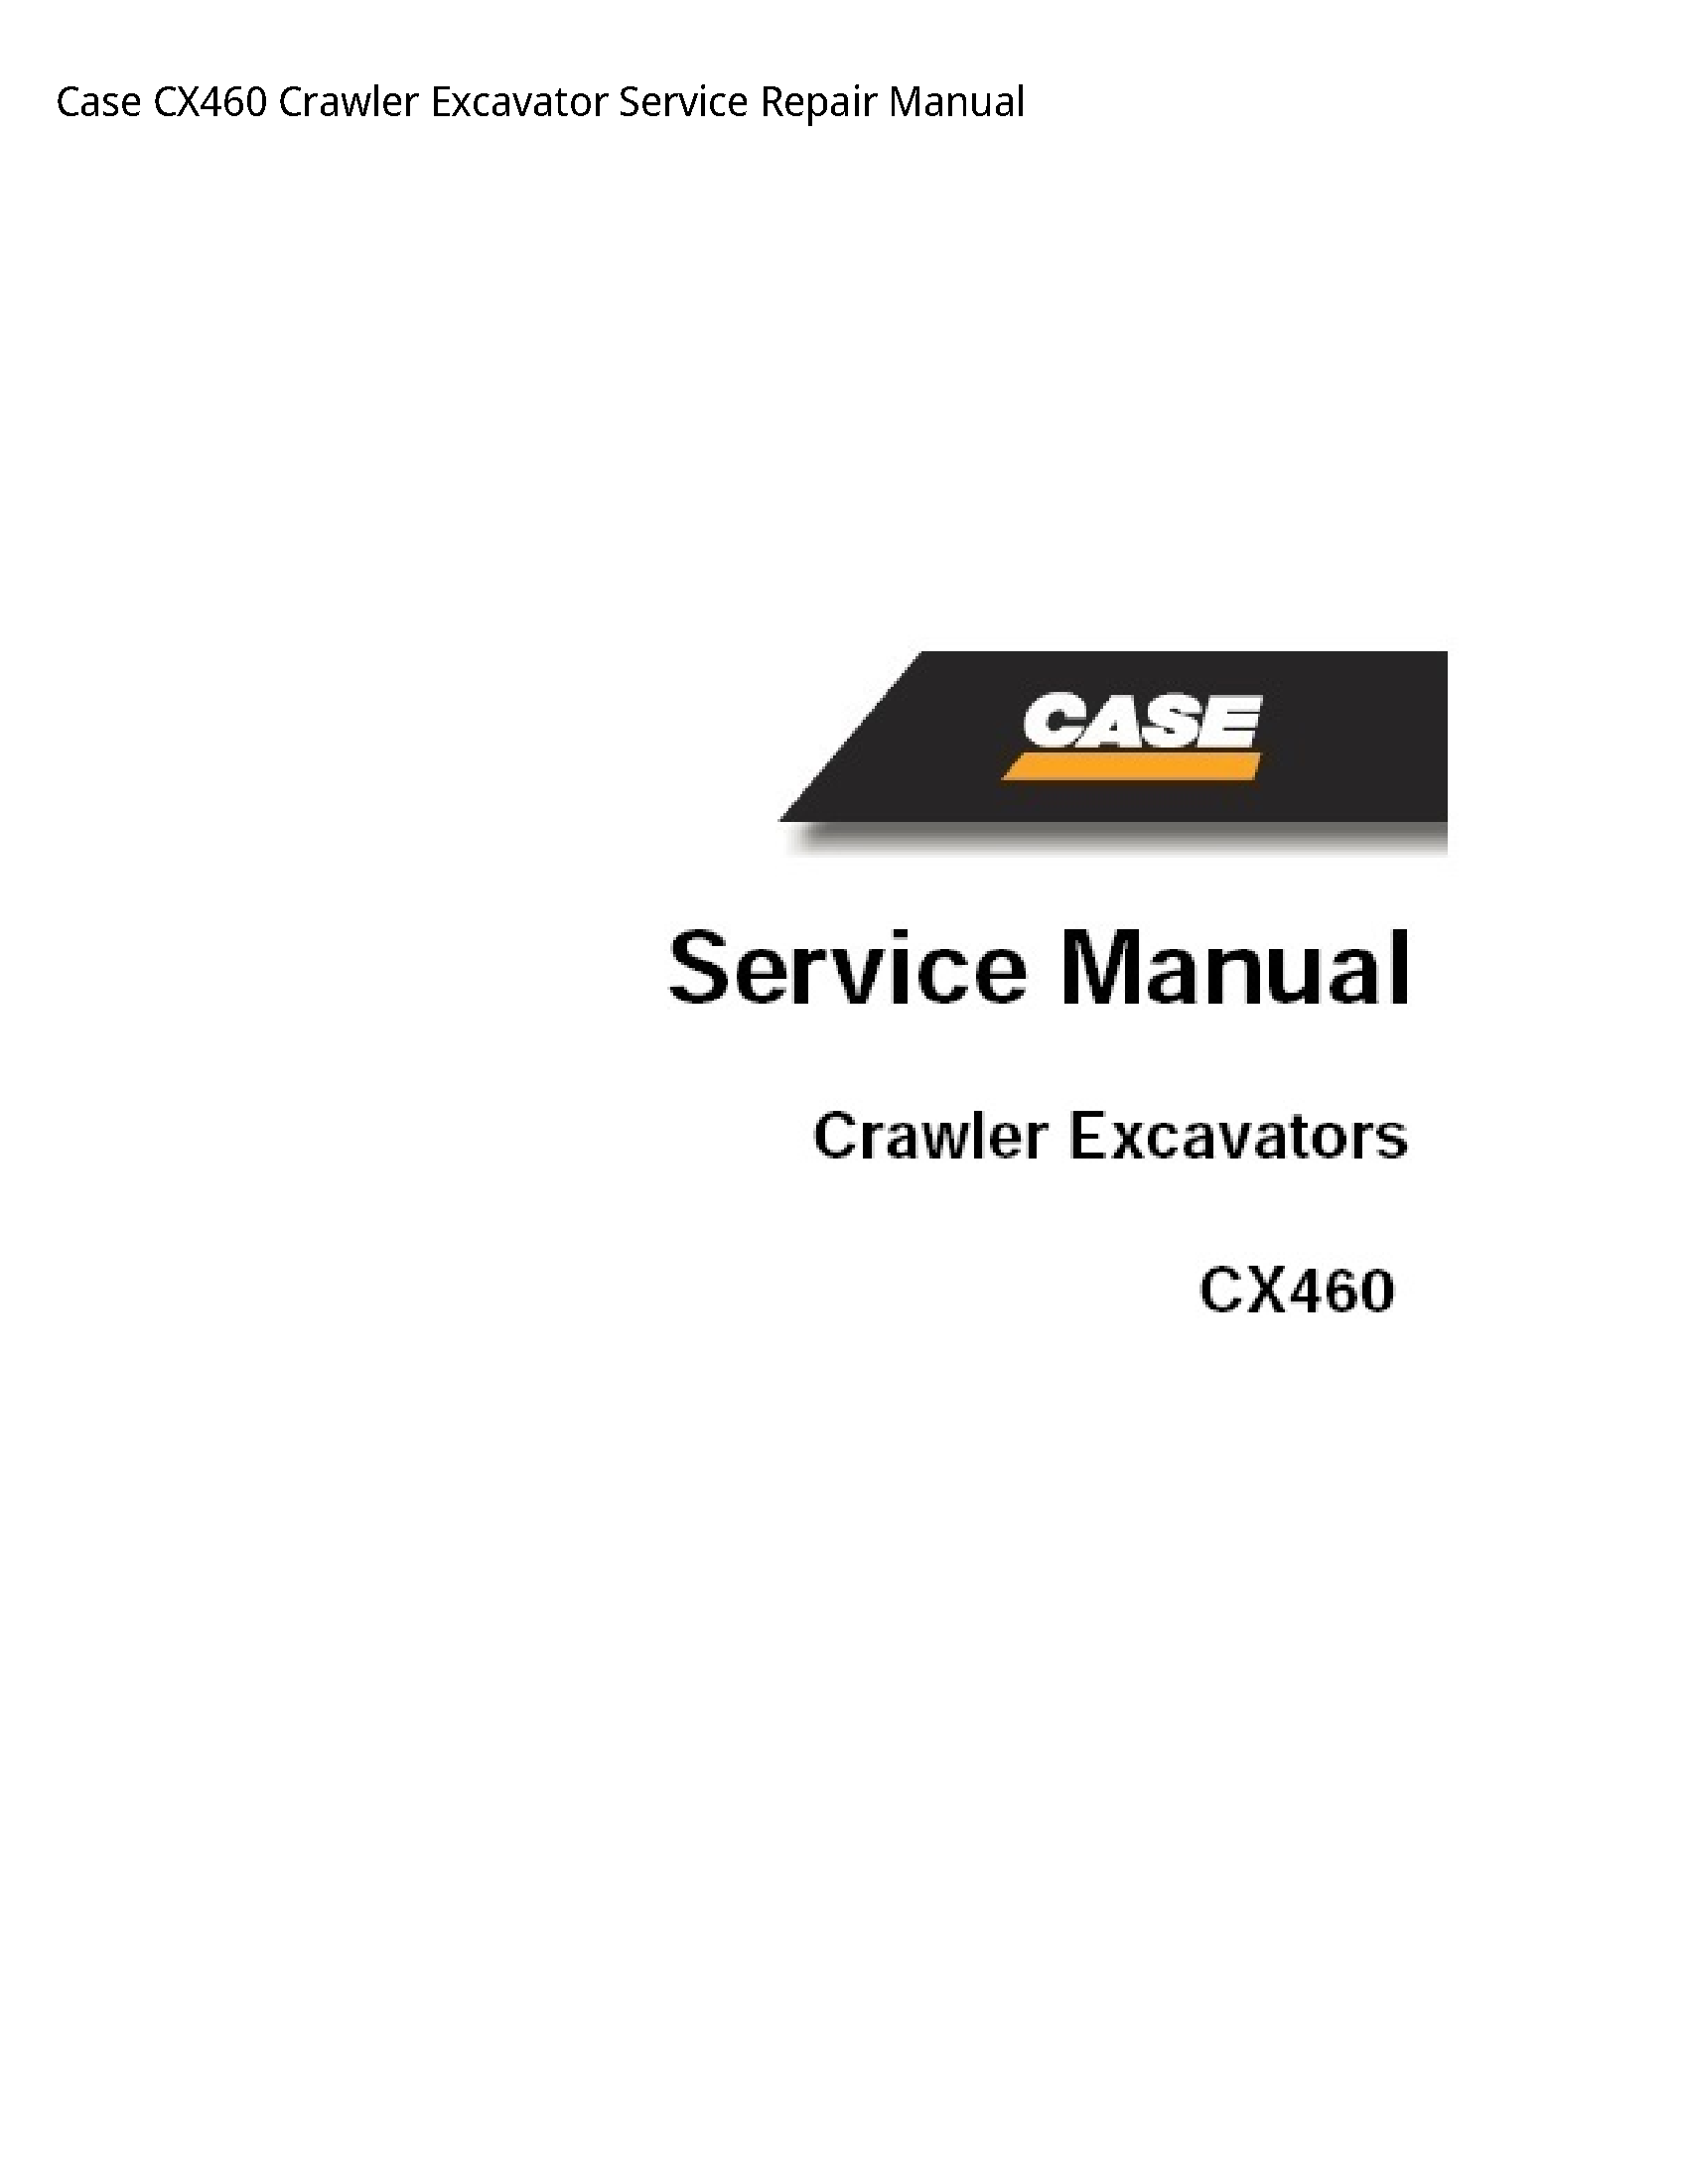 Case/Case IH CX460 Crawler Excavator manual